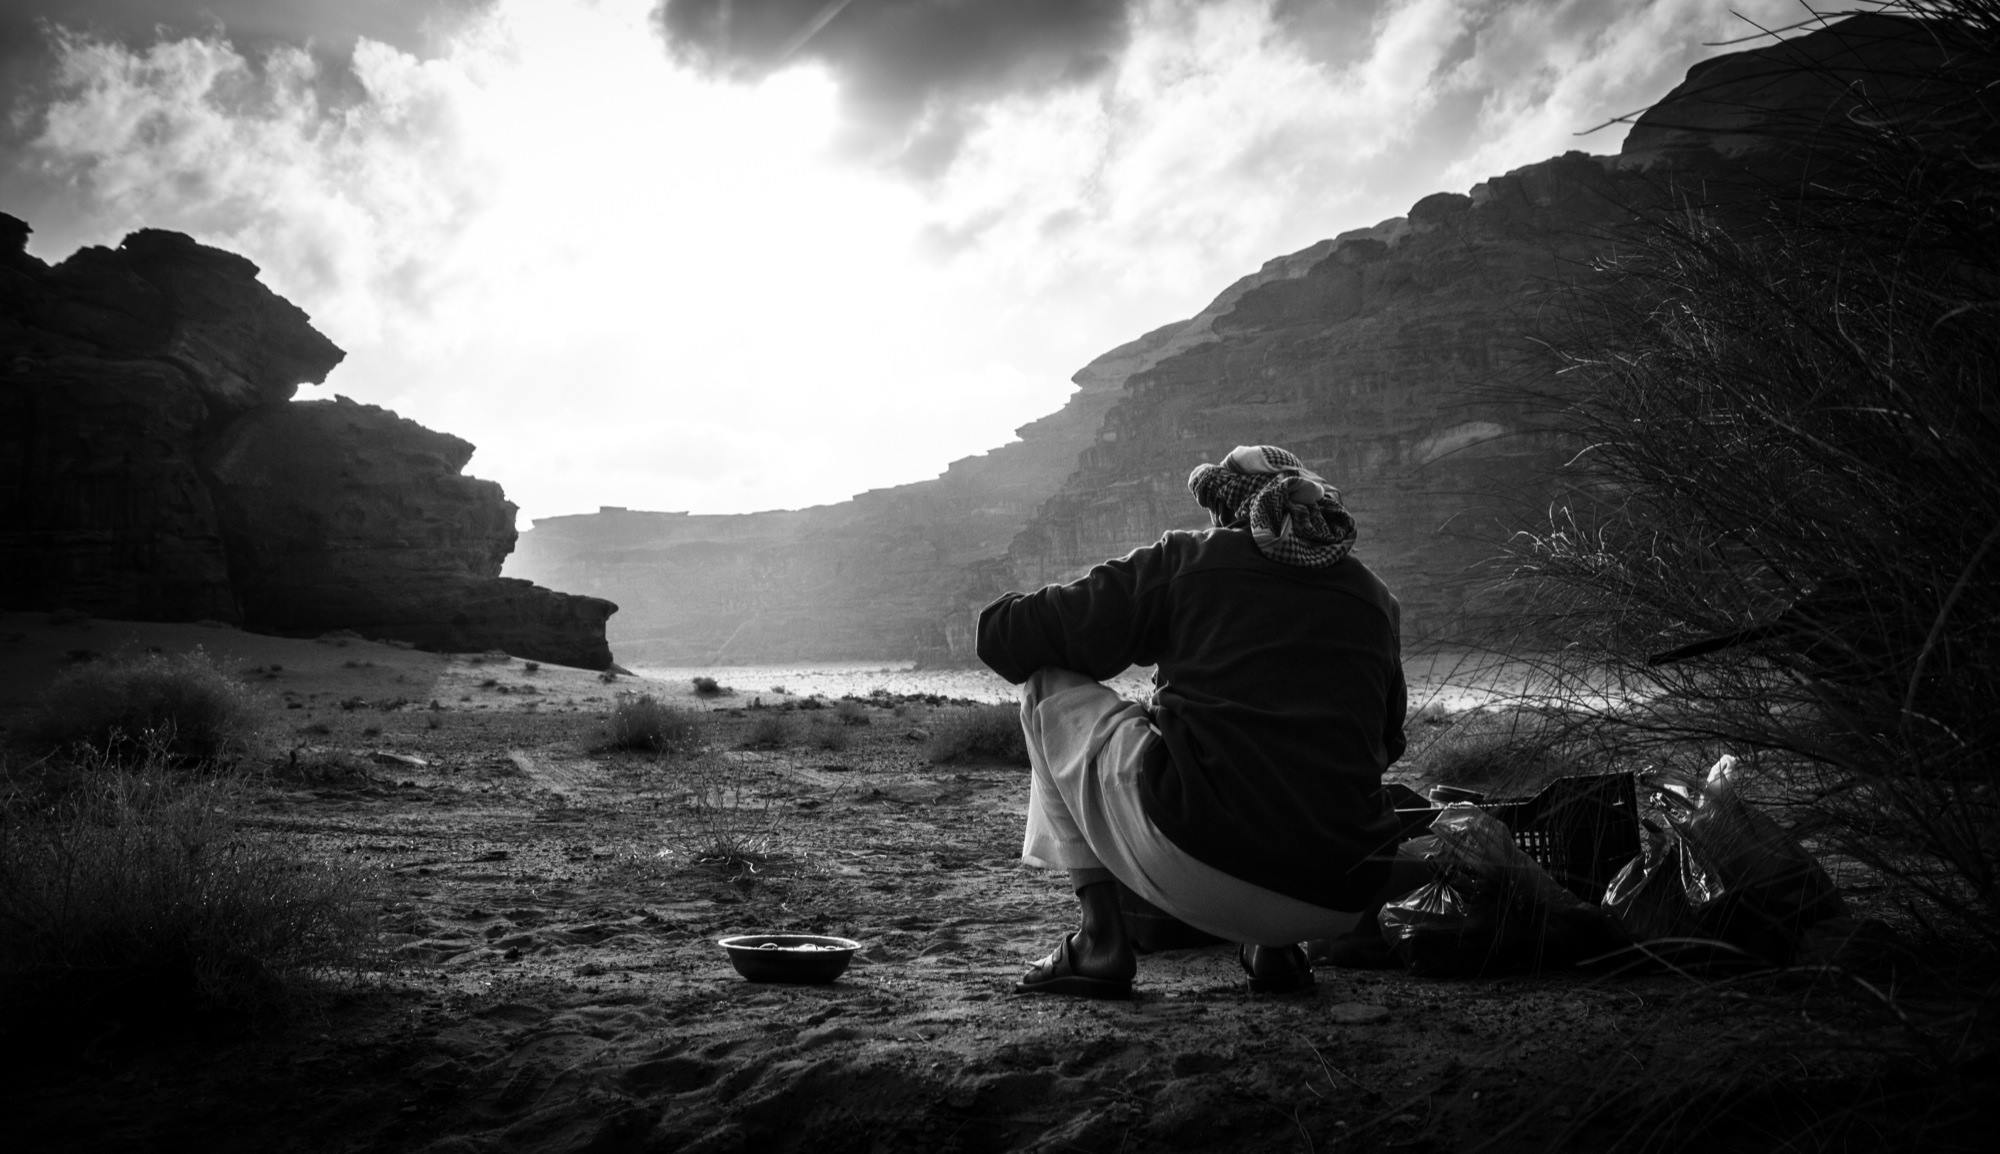 Jordan Tour - Wadi Rum